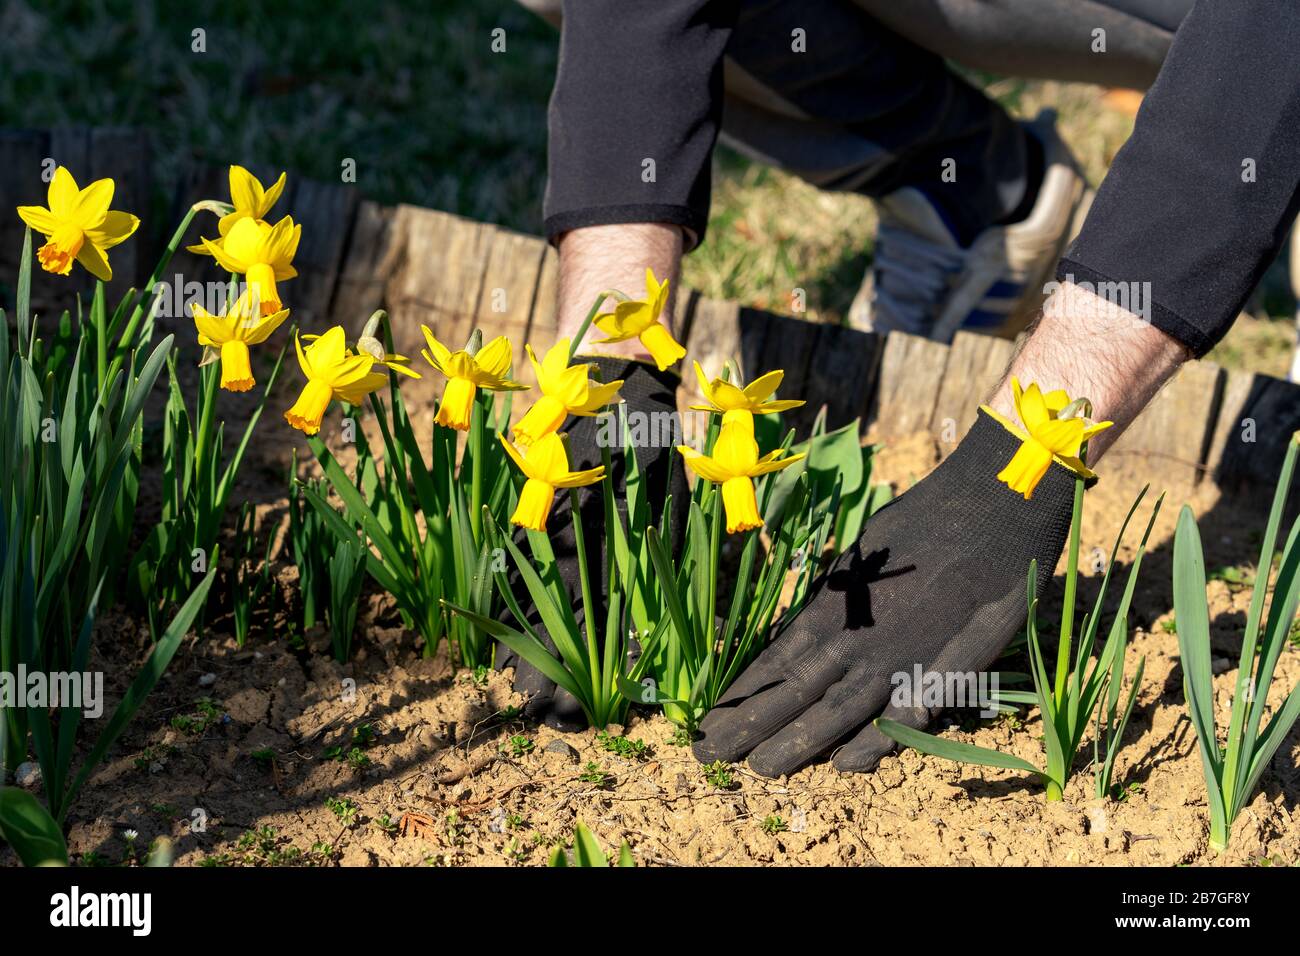 Die Hände des Menschen, der sich um Gartenpflege kümmert, bepflanzen Narzienblumen Stockfoto